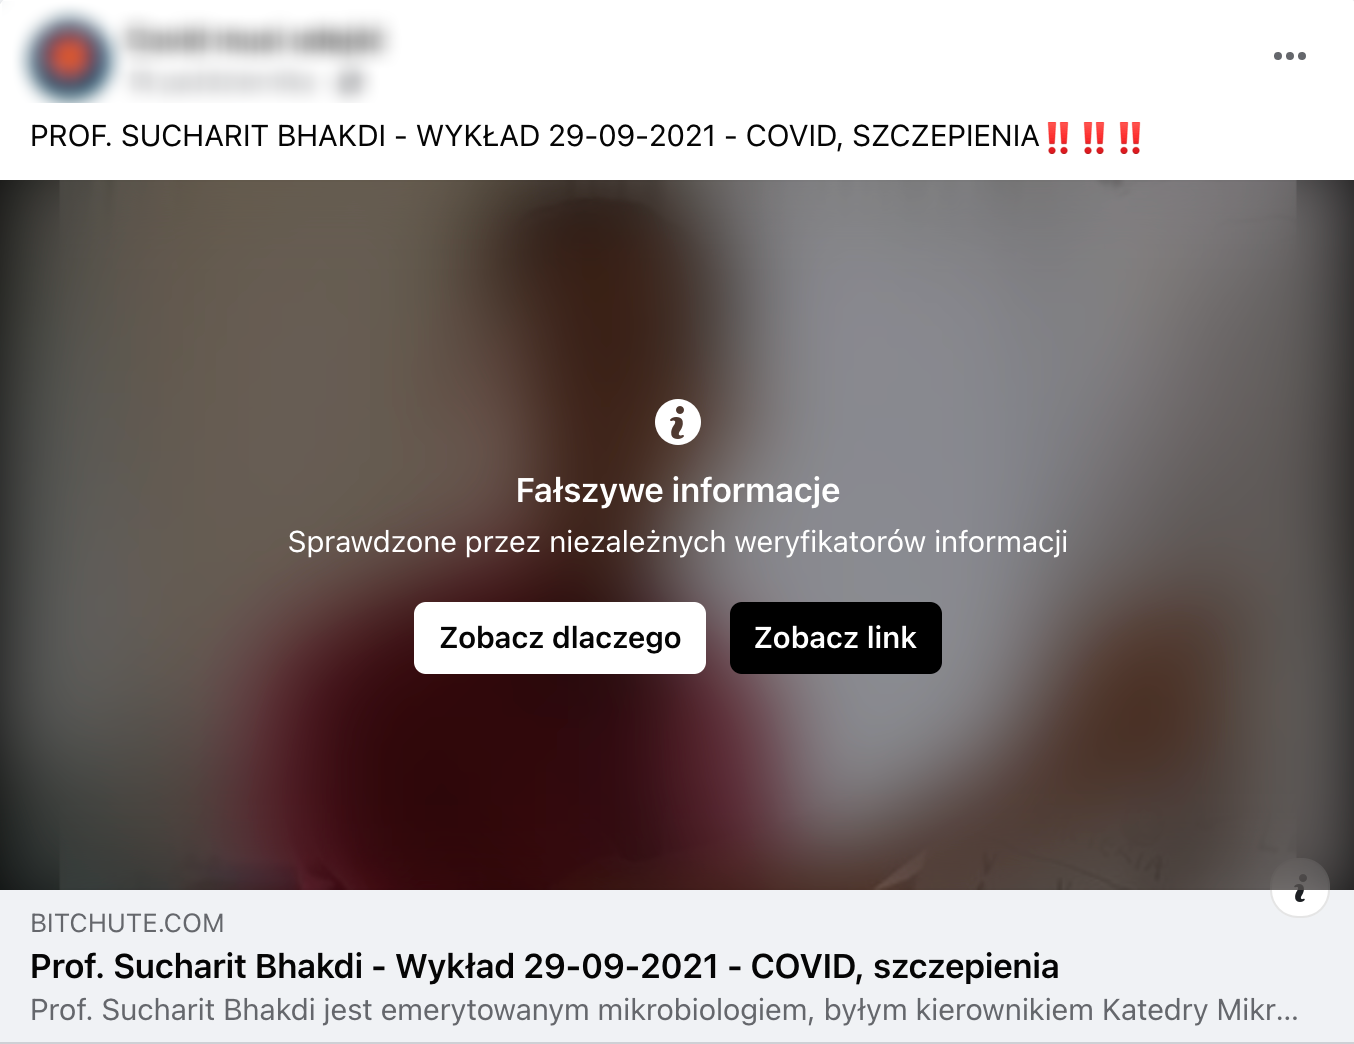 Polski wpis z adnotacją o "fałszywych informacjach"